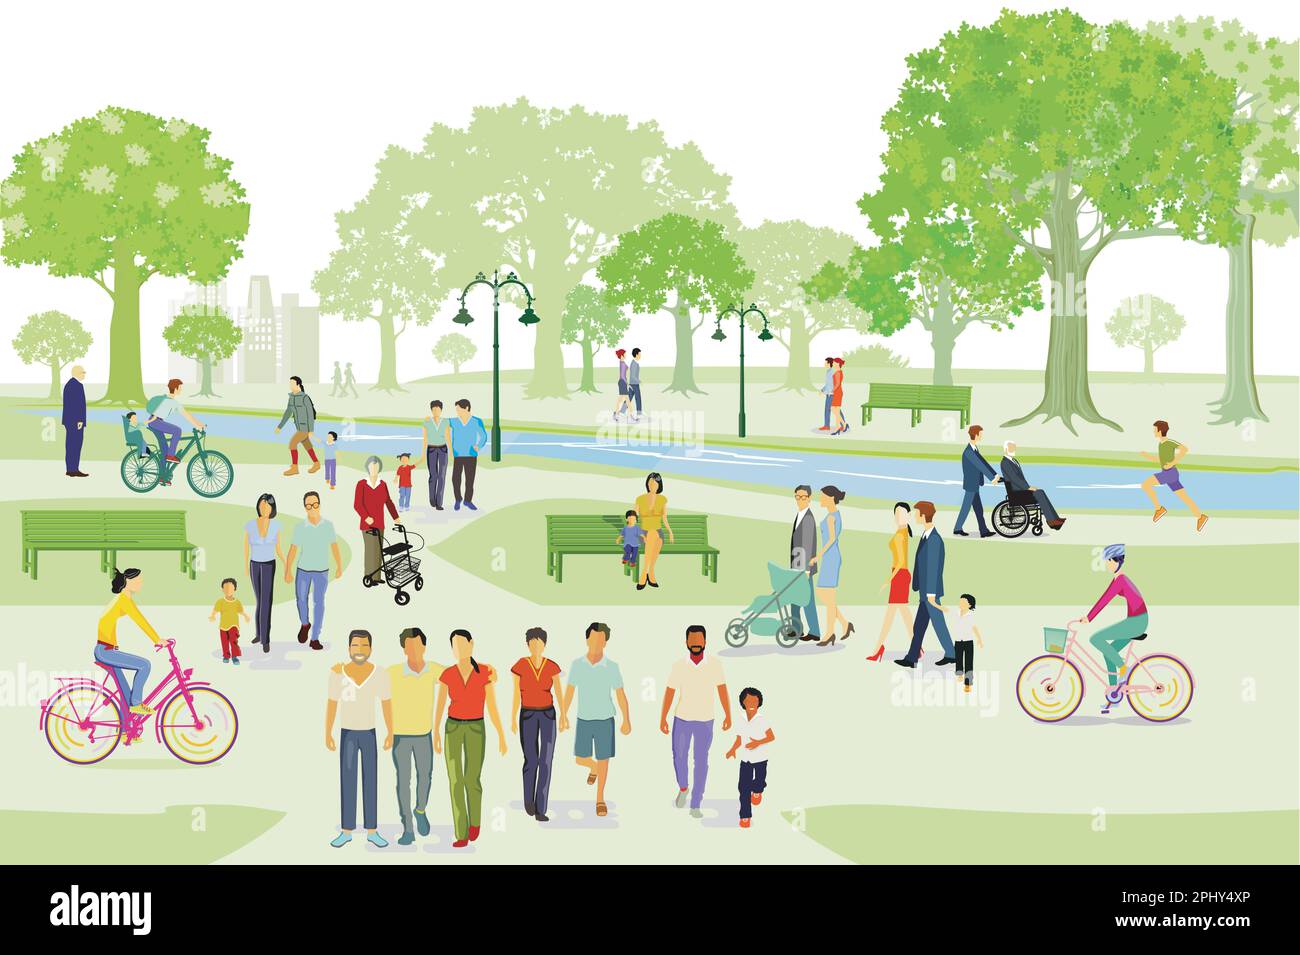 Erholung im Park mit Familien und anderen Menschen, Illustration Stock Vektor